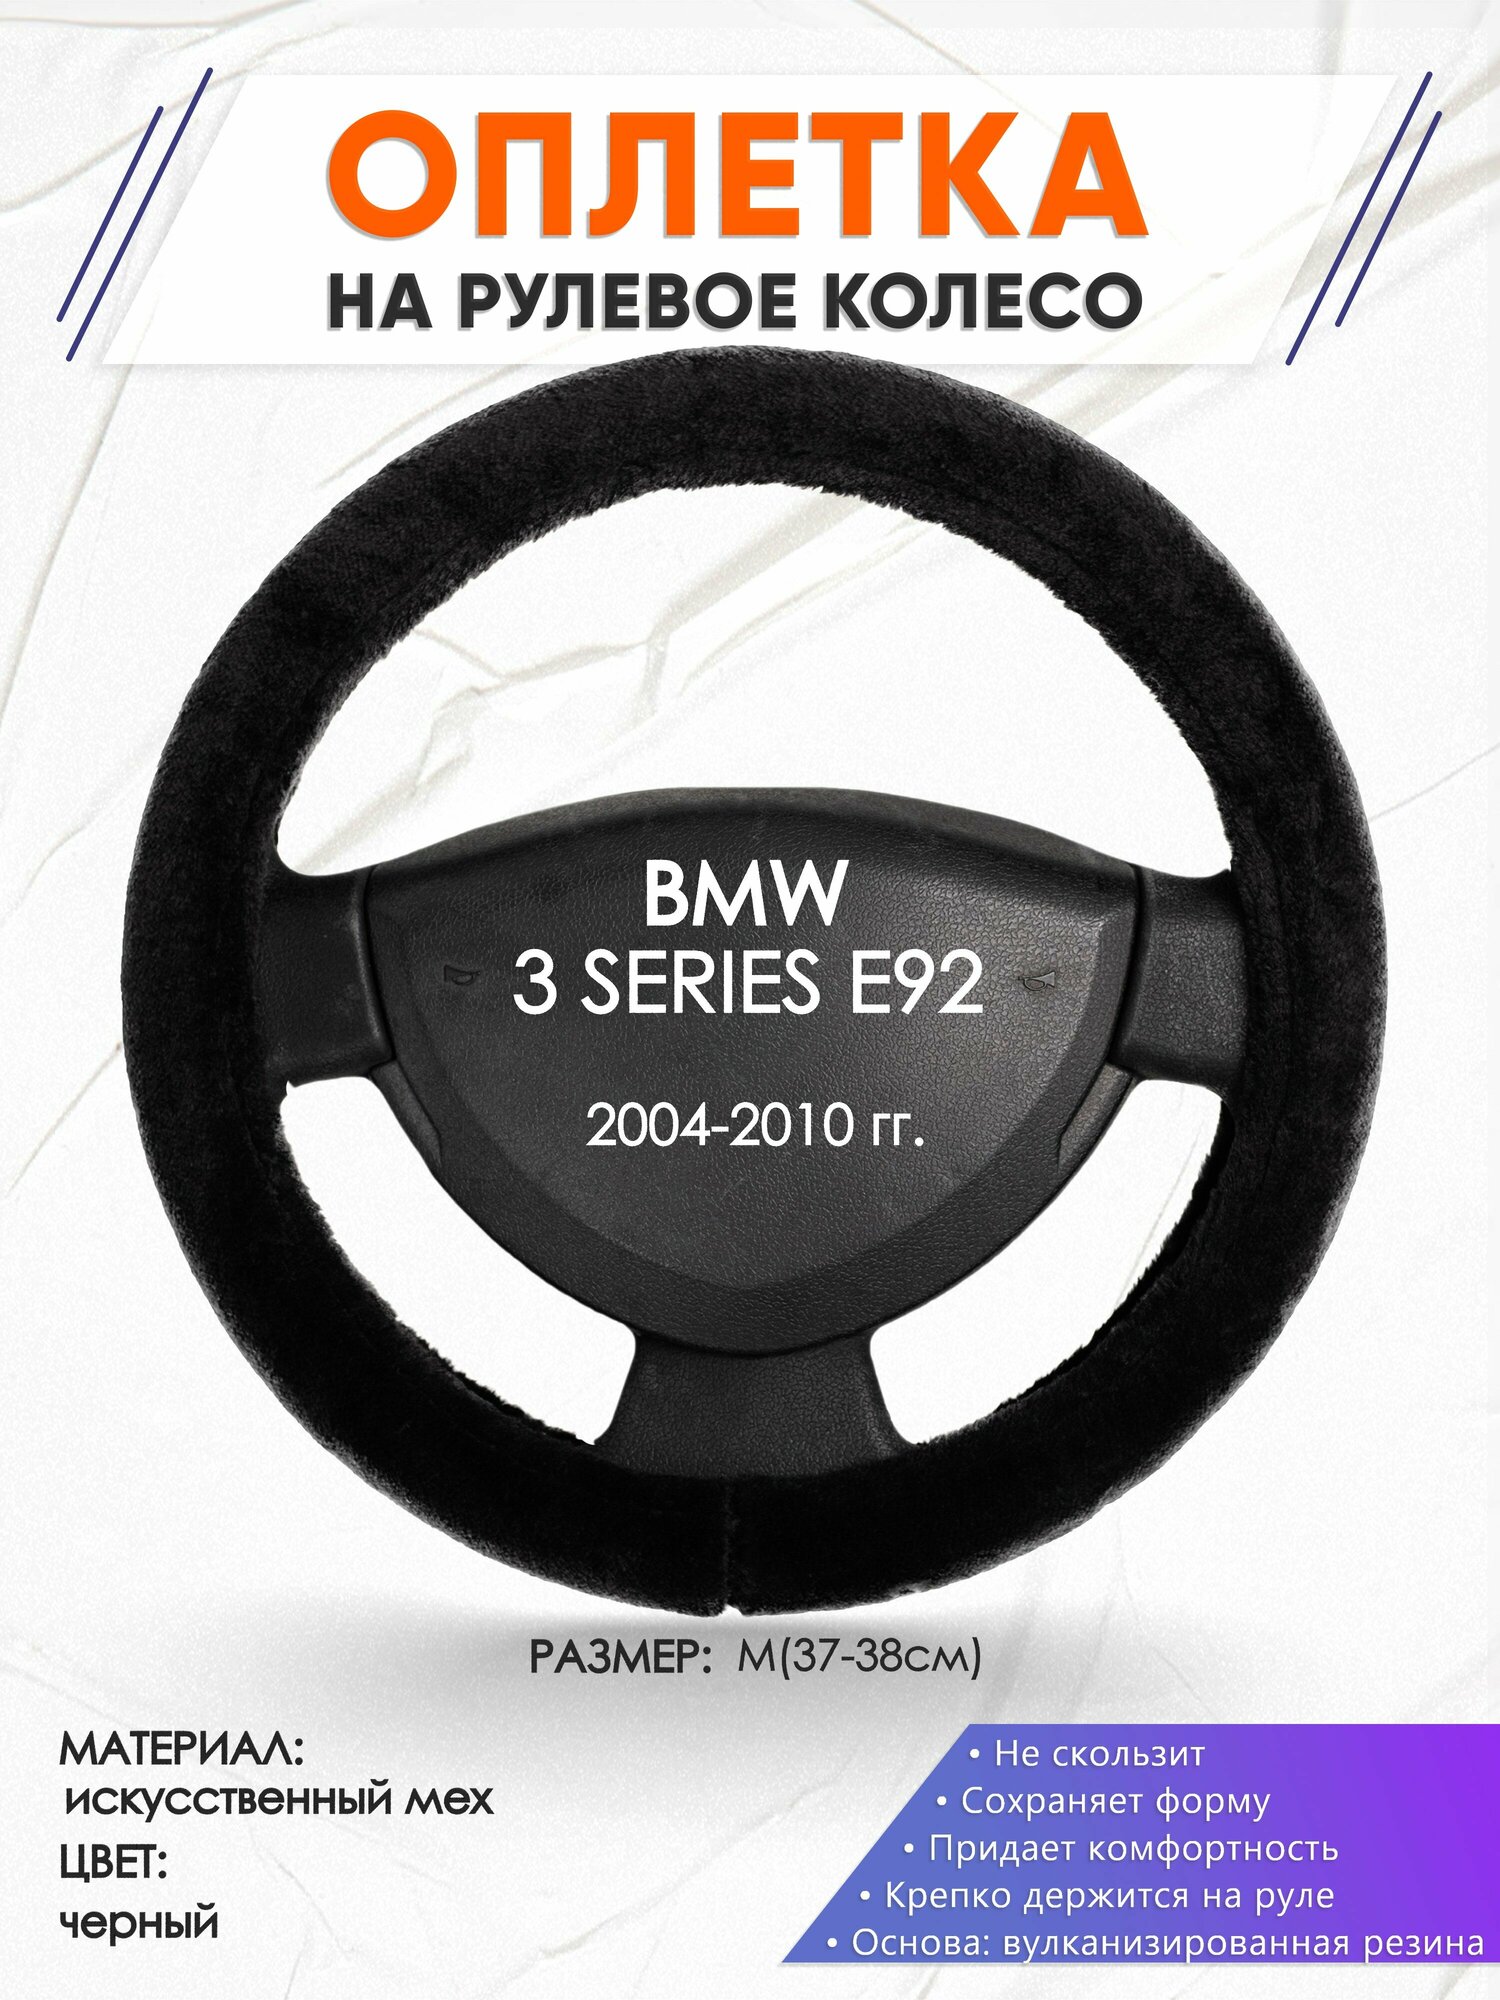 Оплетка наруль для BMW 3 SERIES E92(Бмв серия 3) 2004-2010 годов выпуска, размер M(37-38см), Искусственный мех 45